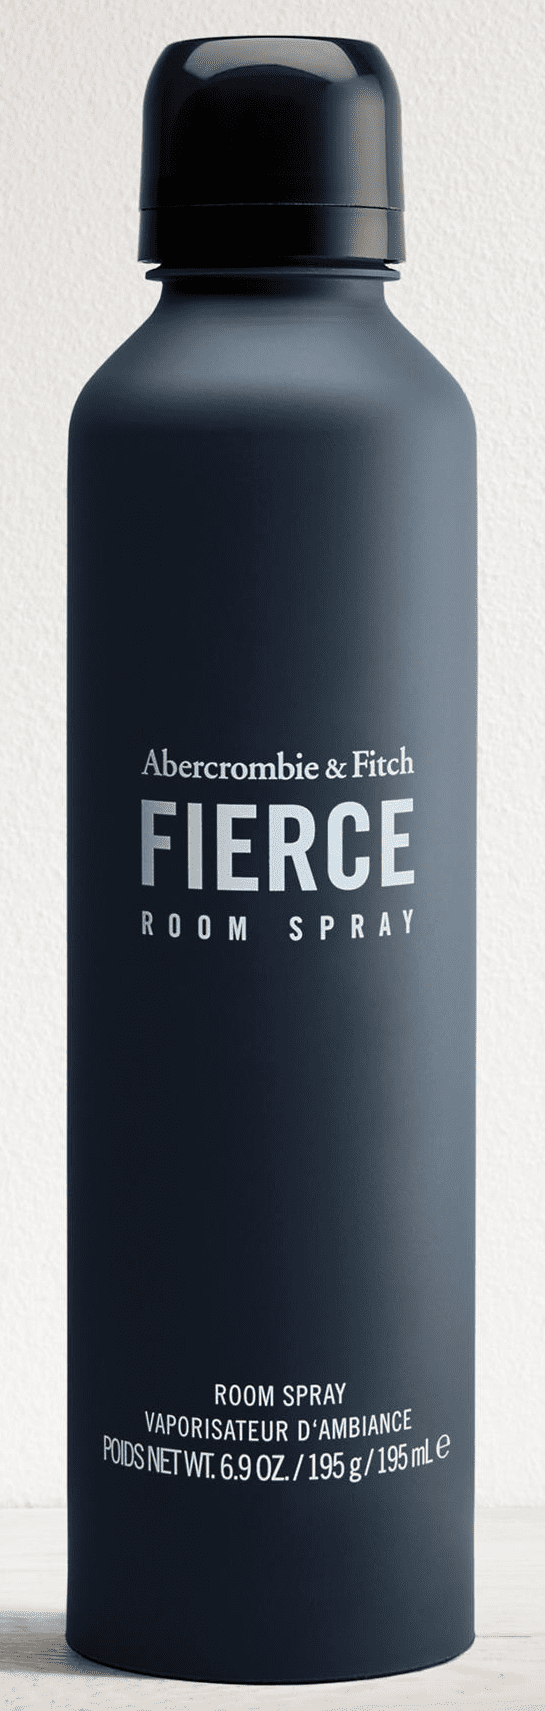 abercrombie spray